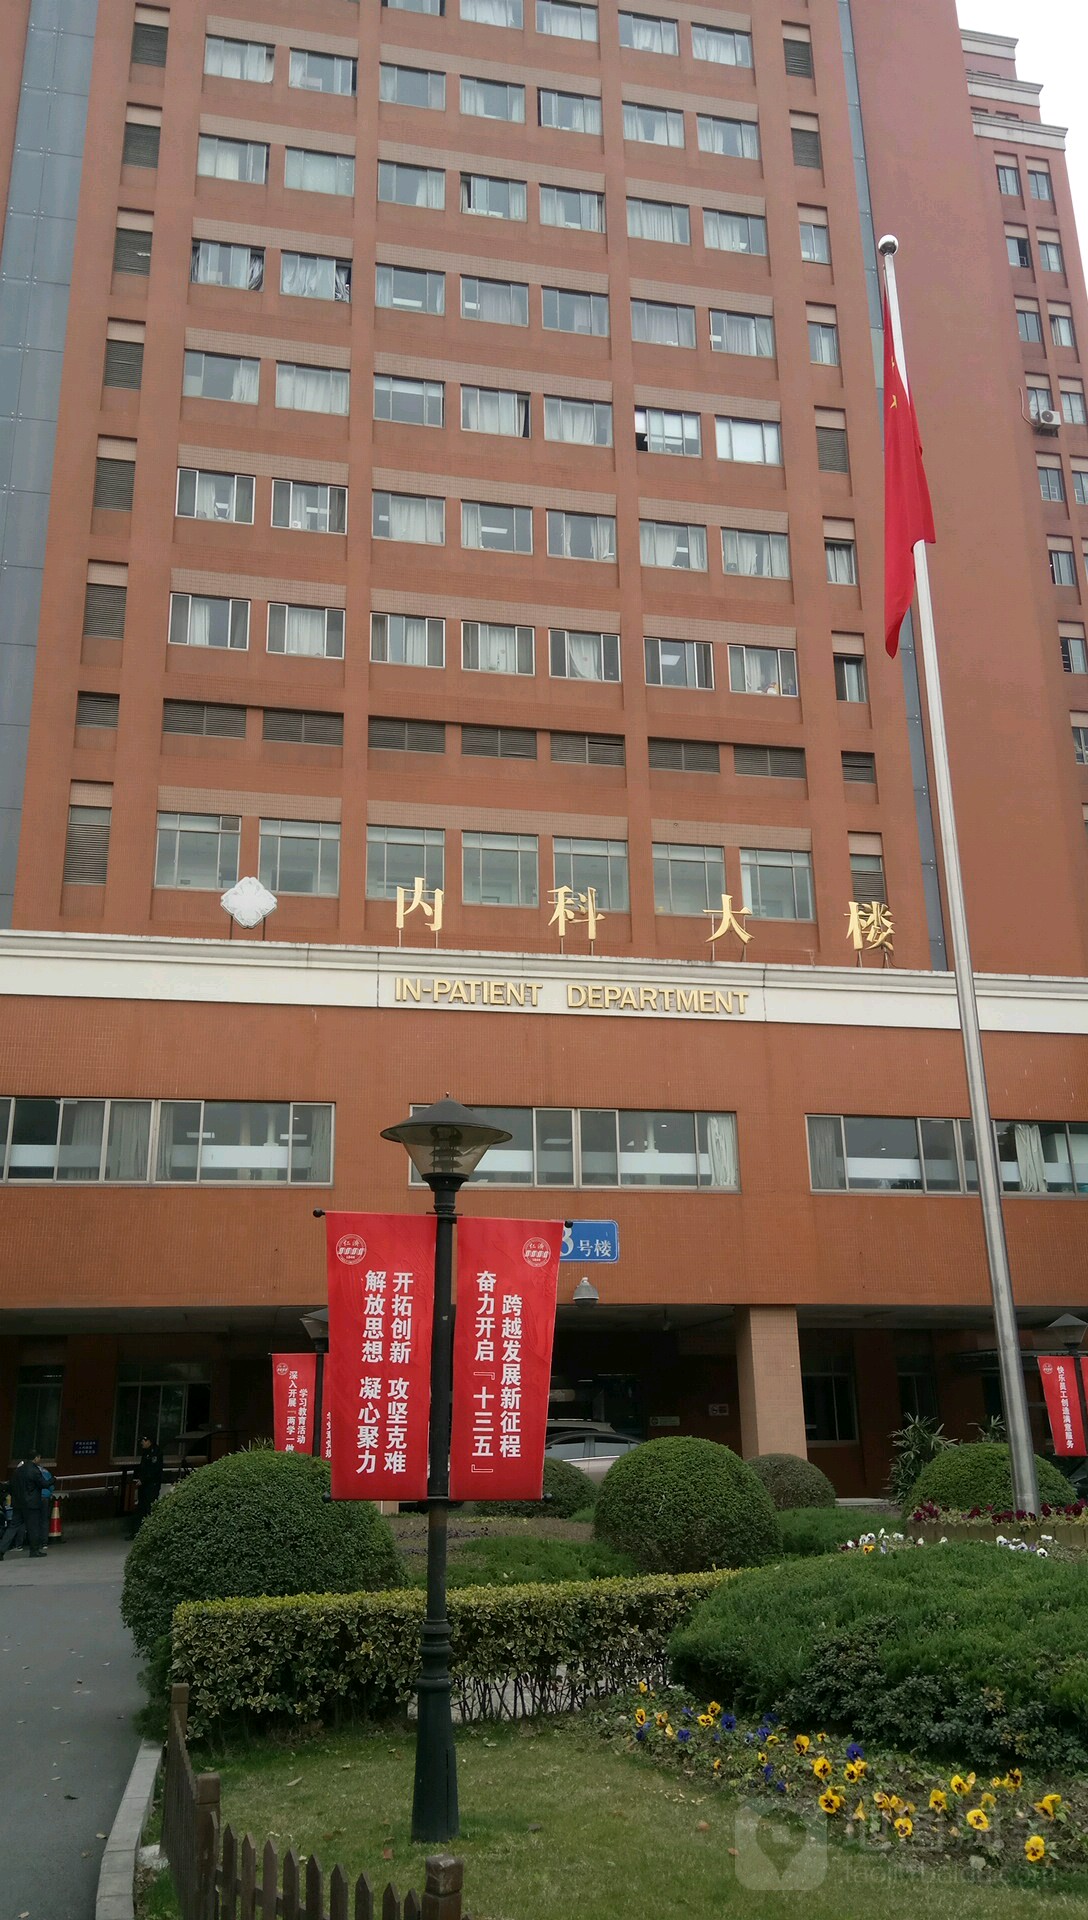 上海交通大学医学院附属仁济医院东部-内科大楼